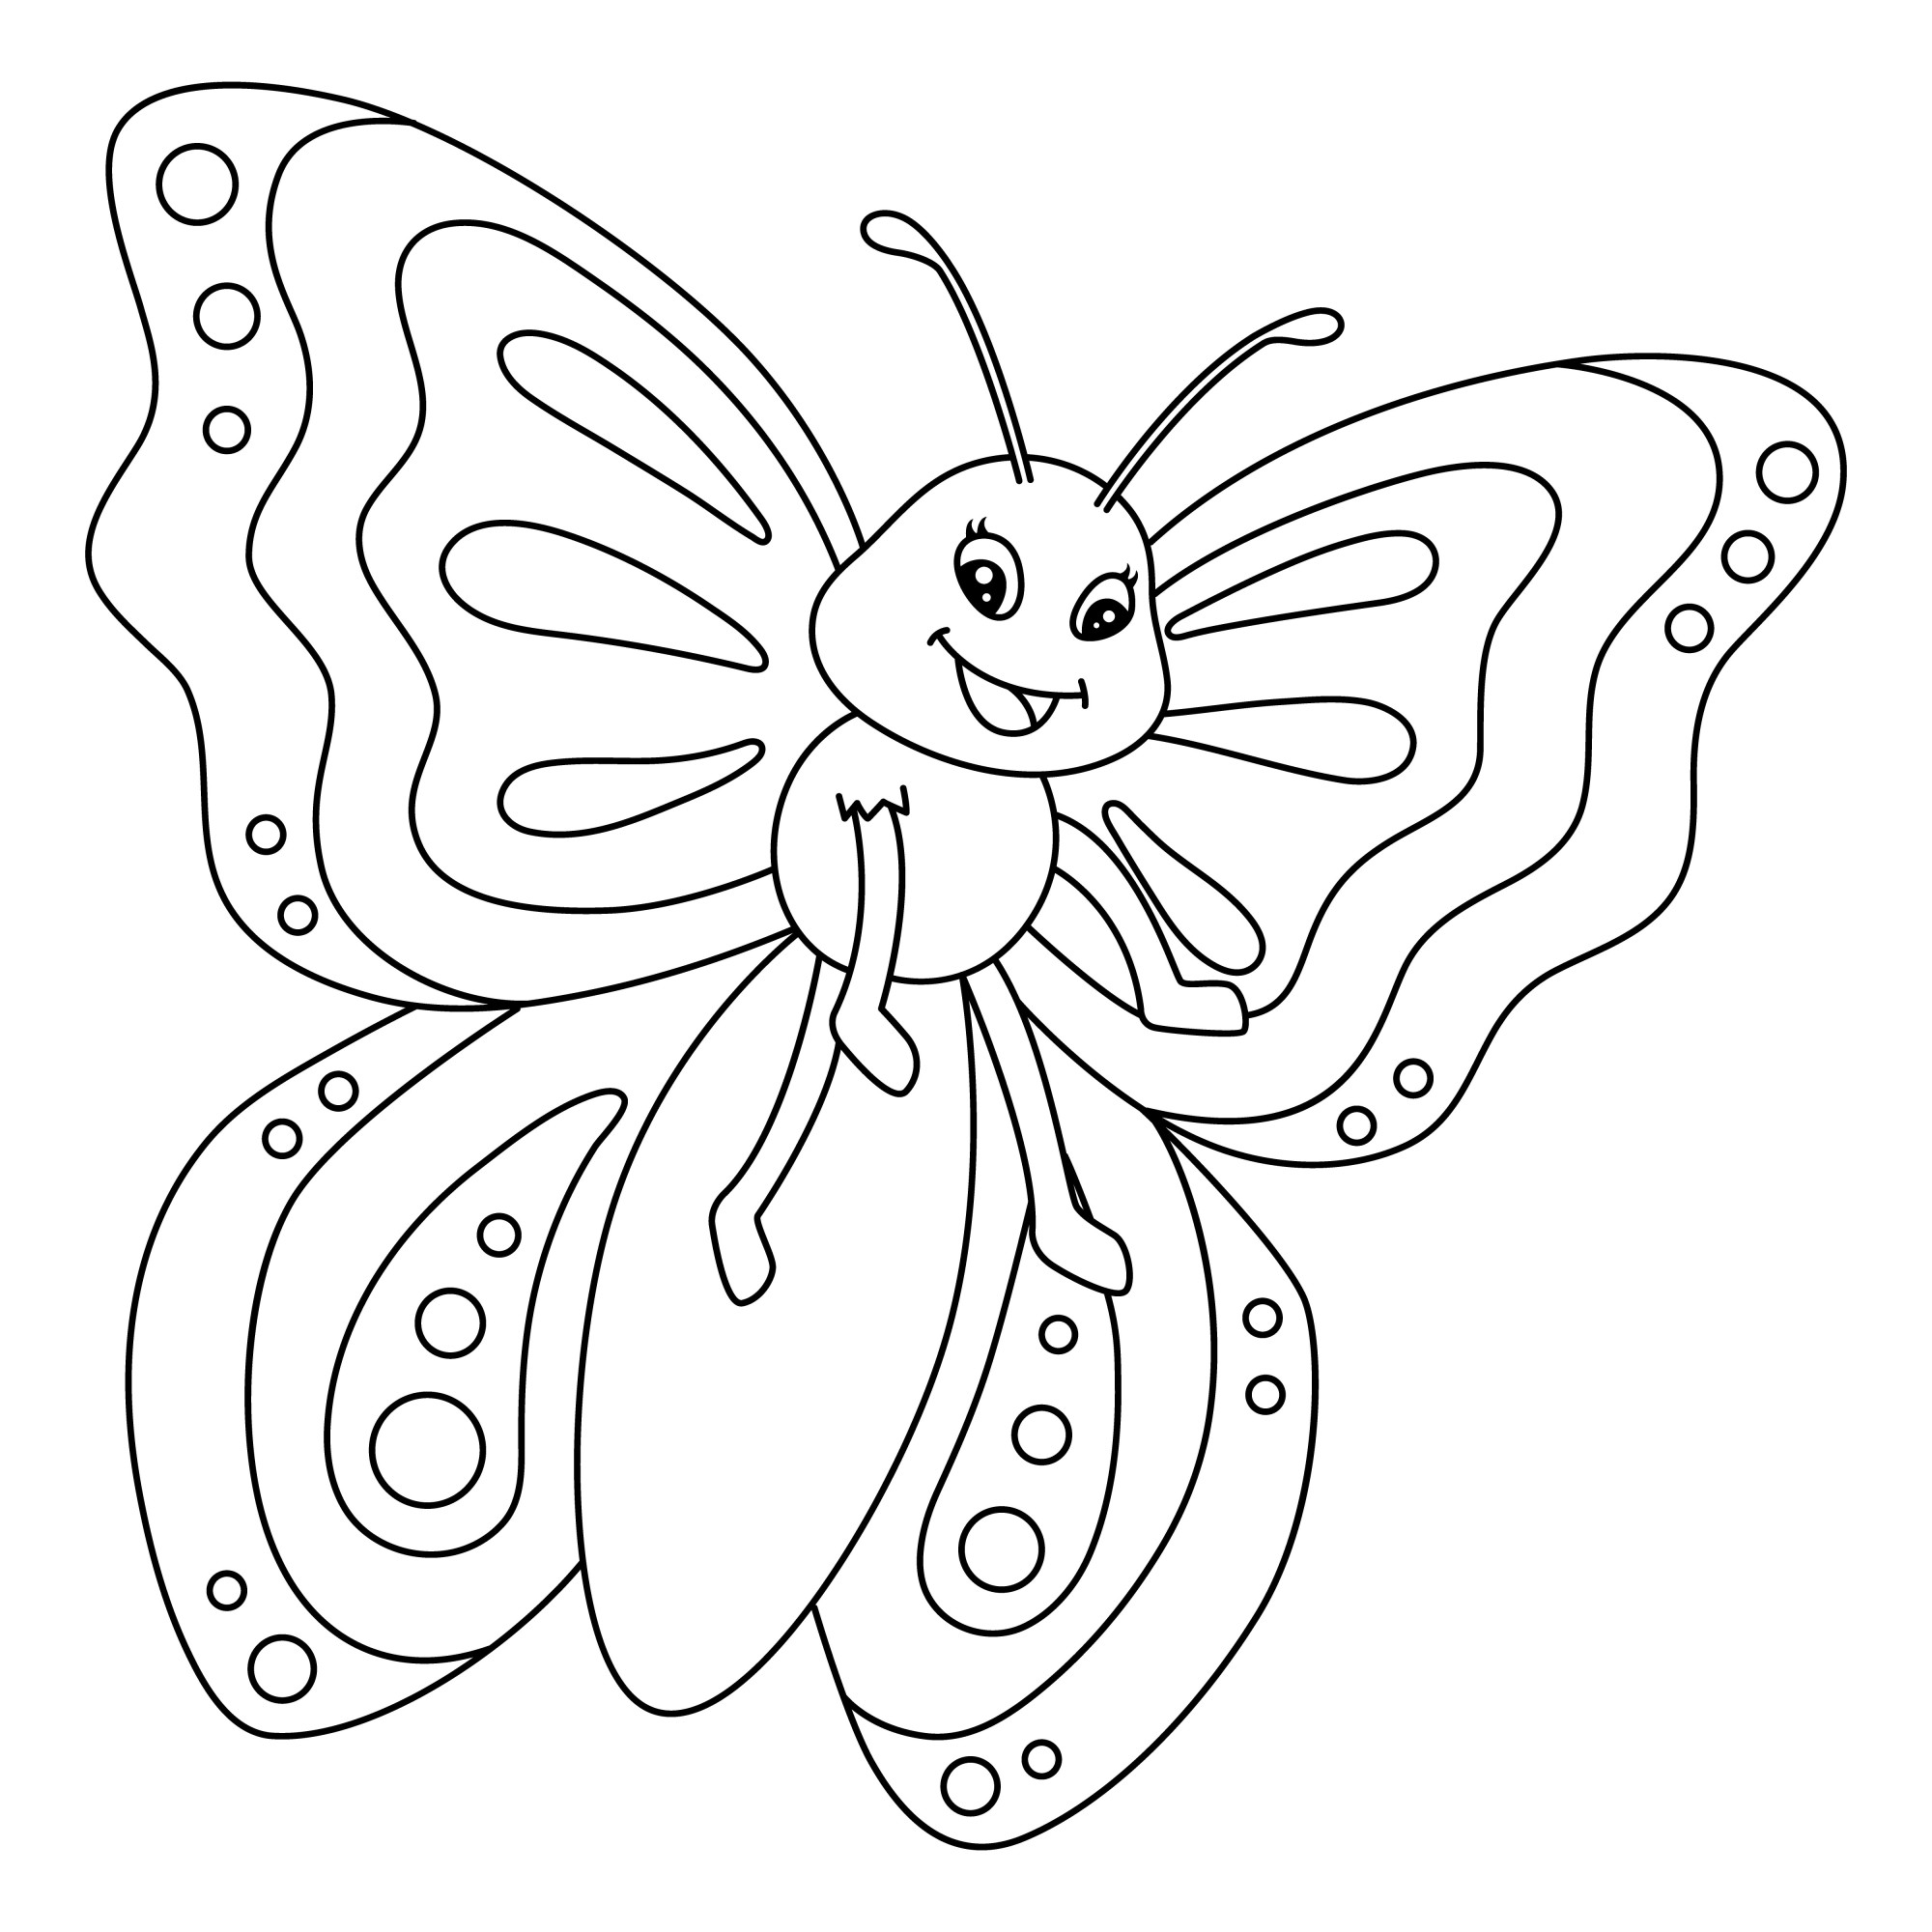 Раскраска для детей: мультяшная забавная бабочка